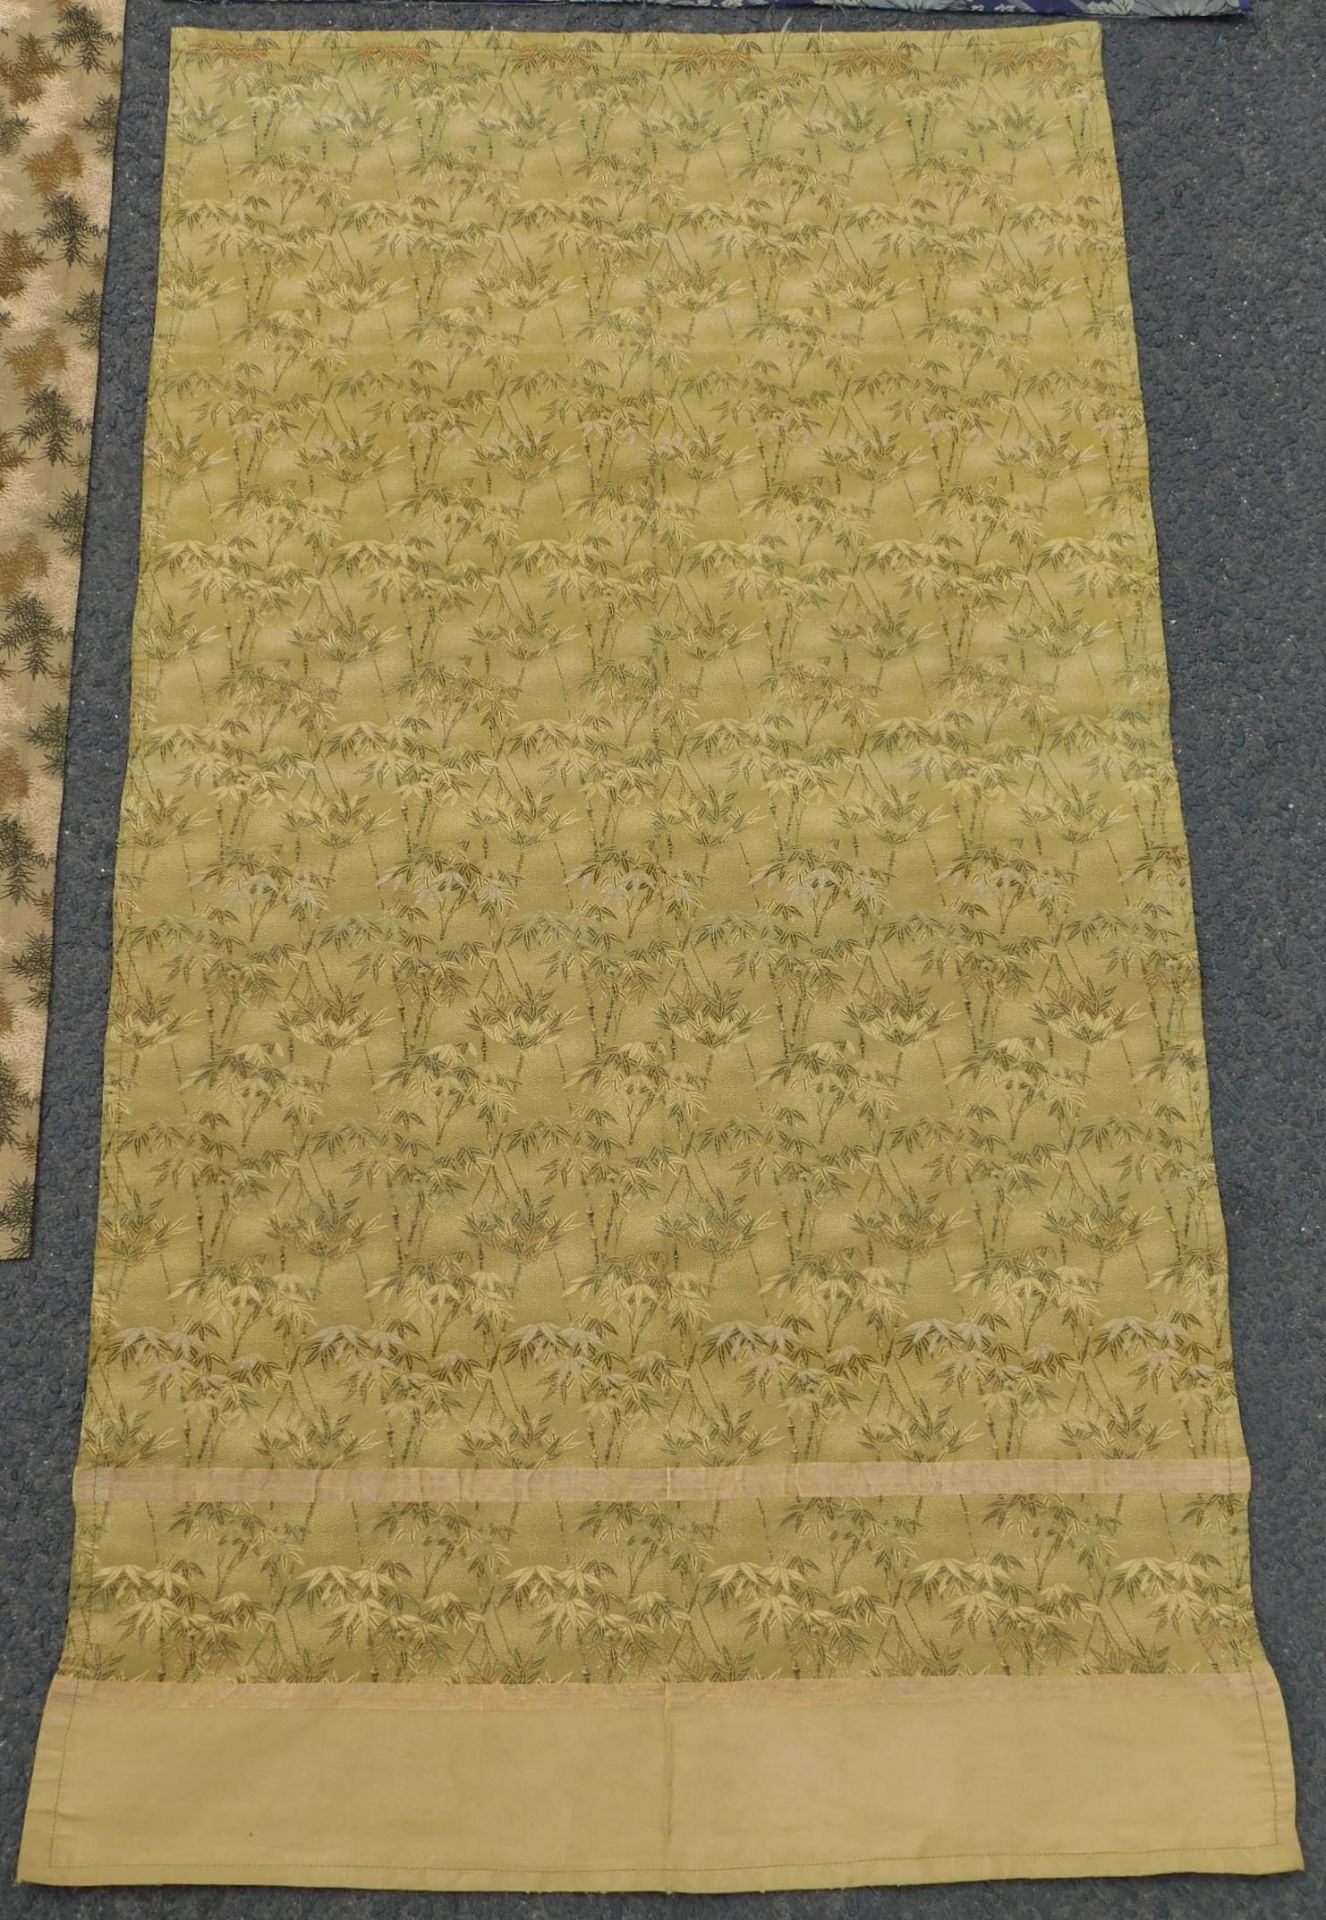 5 Obi Textilien Japan. Wohl alt, teils Seide, gewebt.Bis 205,5 cm x 65 cm.5 Obi Textiles Japan. - Image 10 of 12